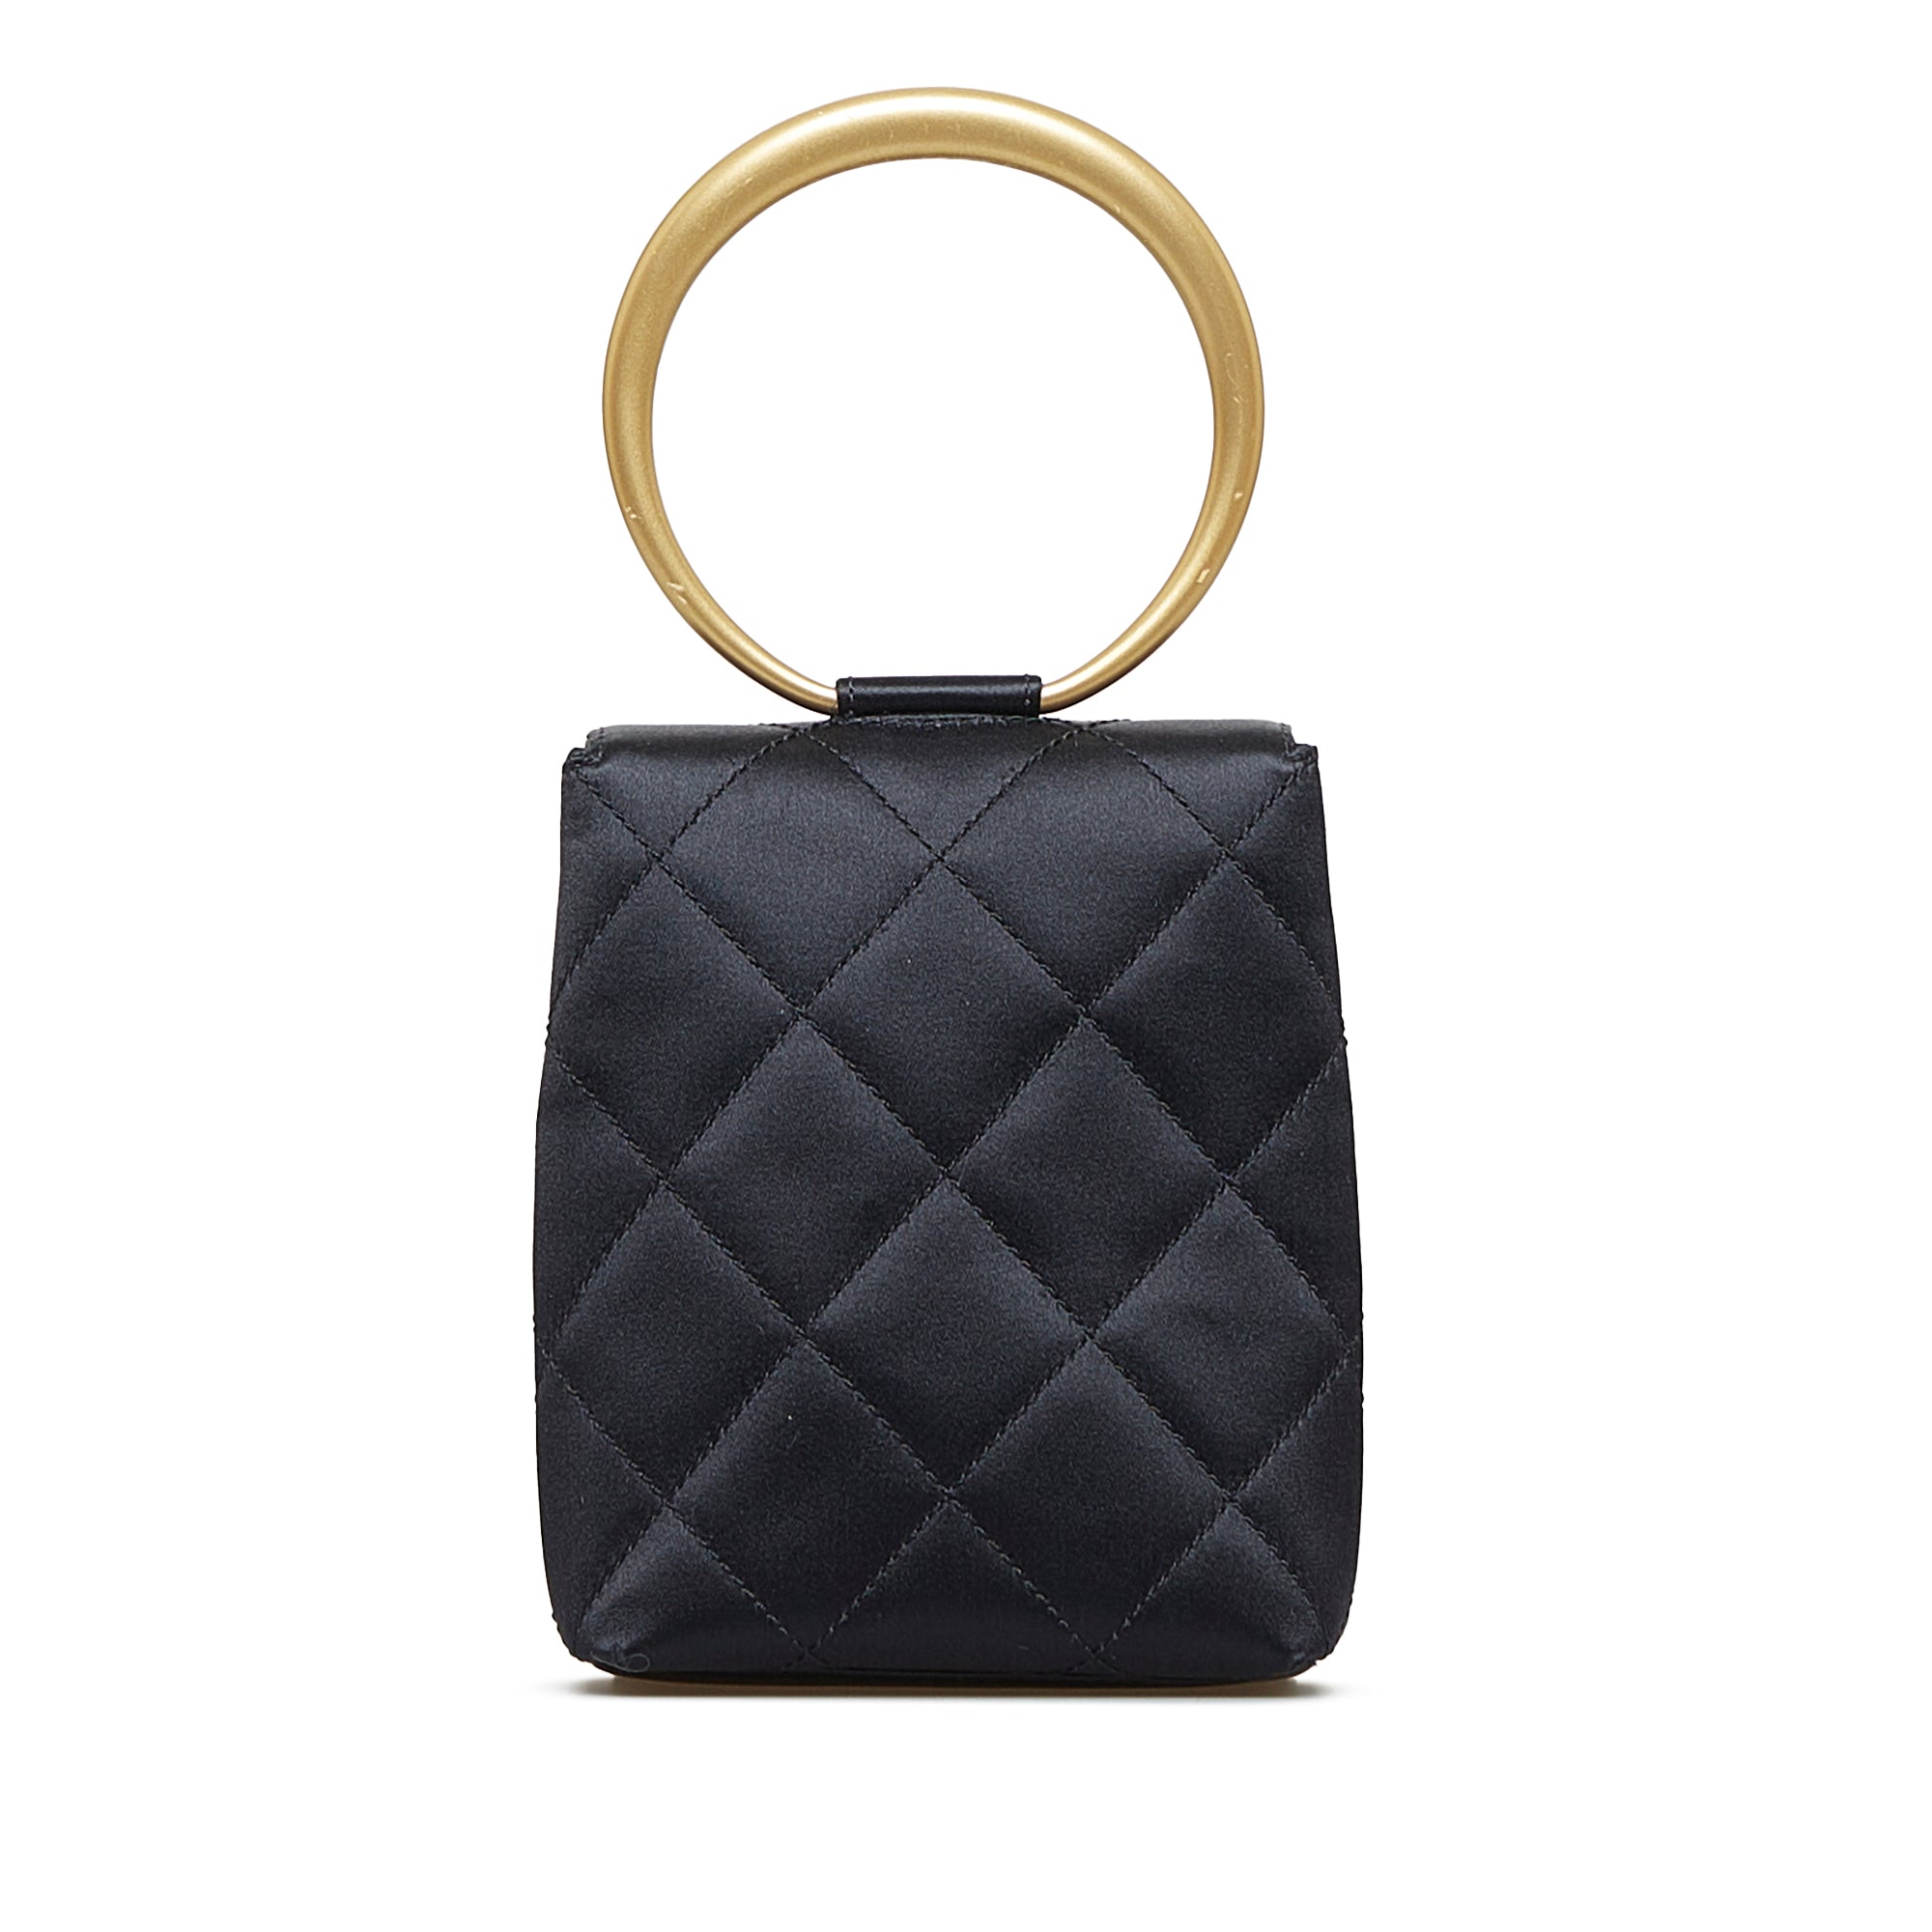 Black Chanel CC Matelasse Bracelet Handbag – Designer Revival